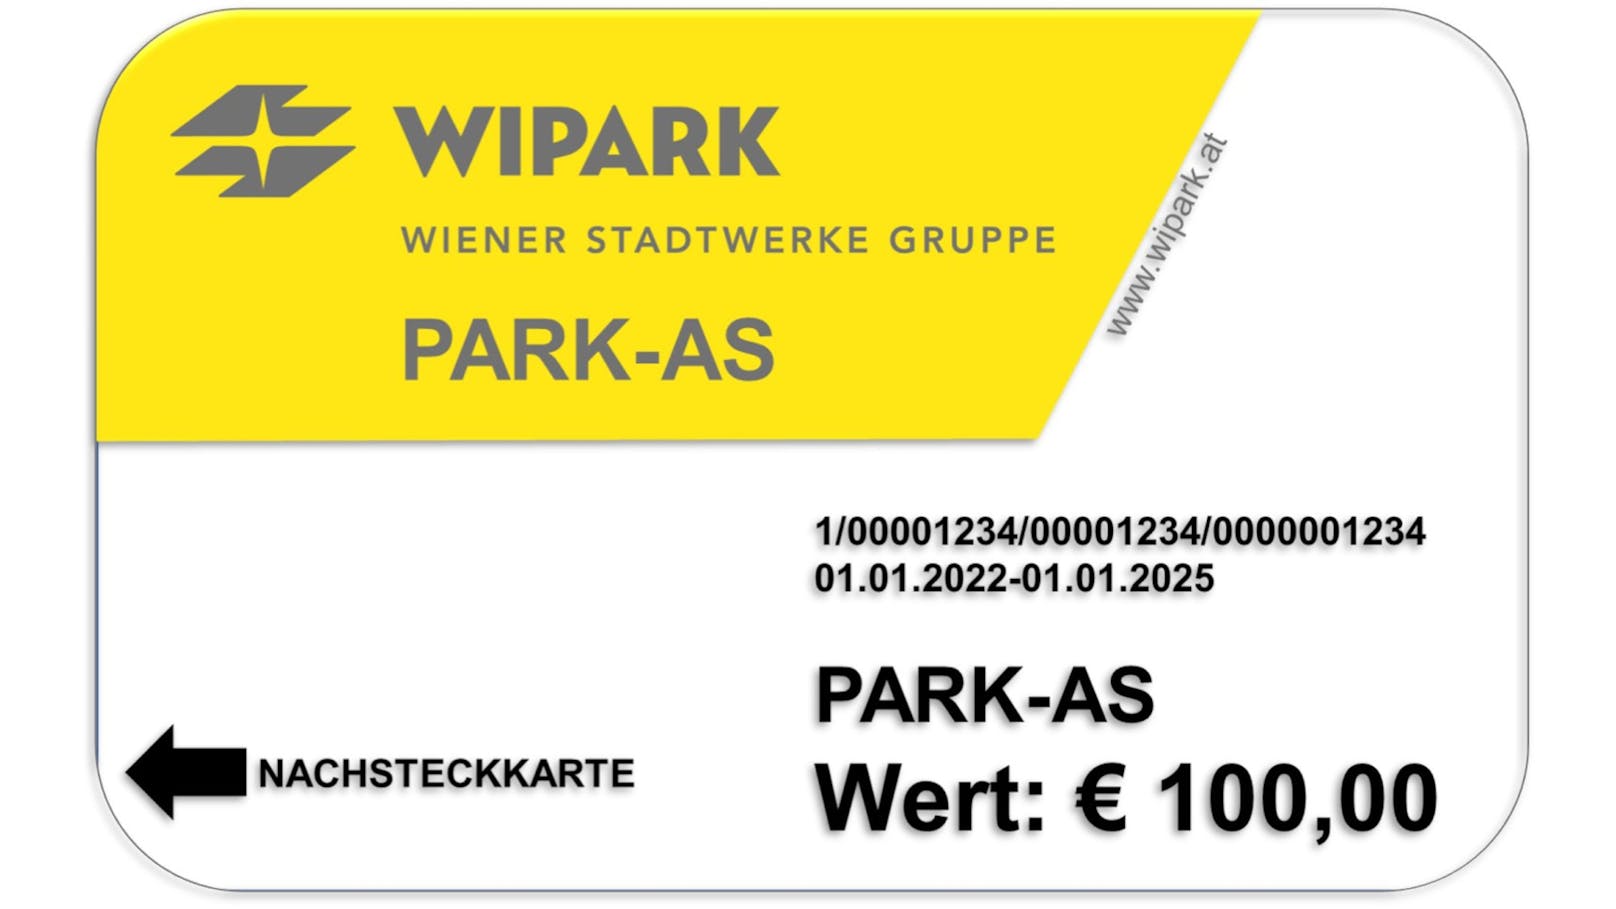 WIPARK Guthaben-Karte im Wert von € 100,-.